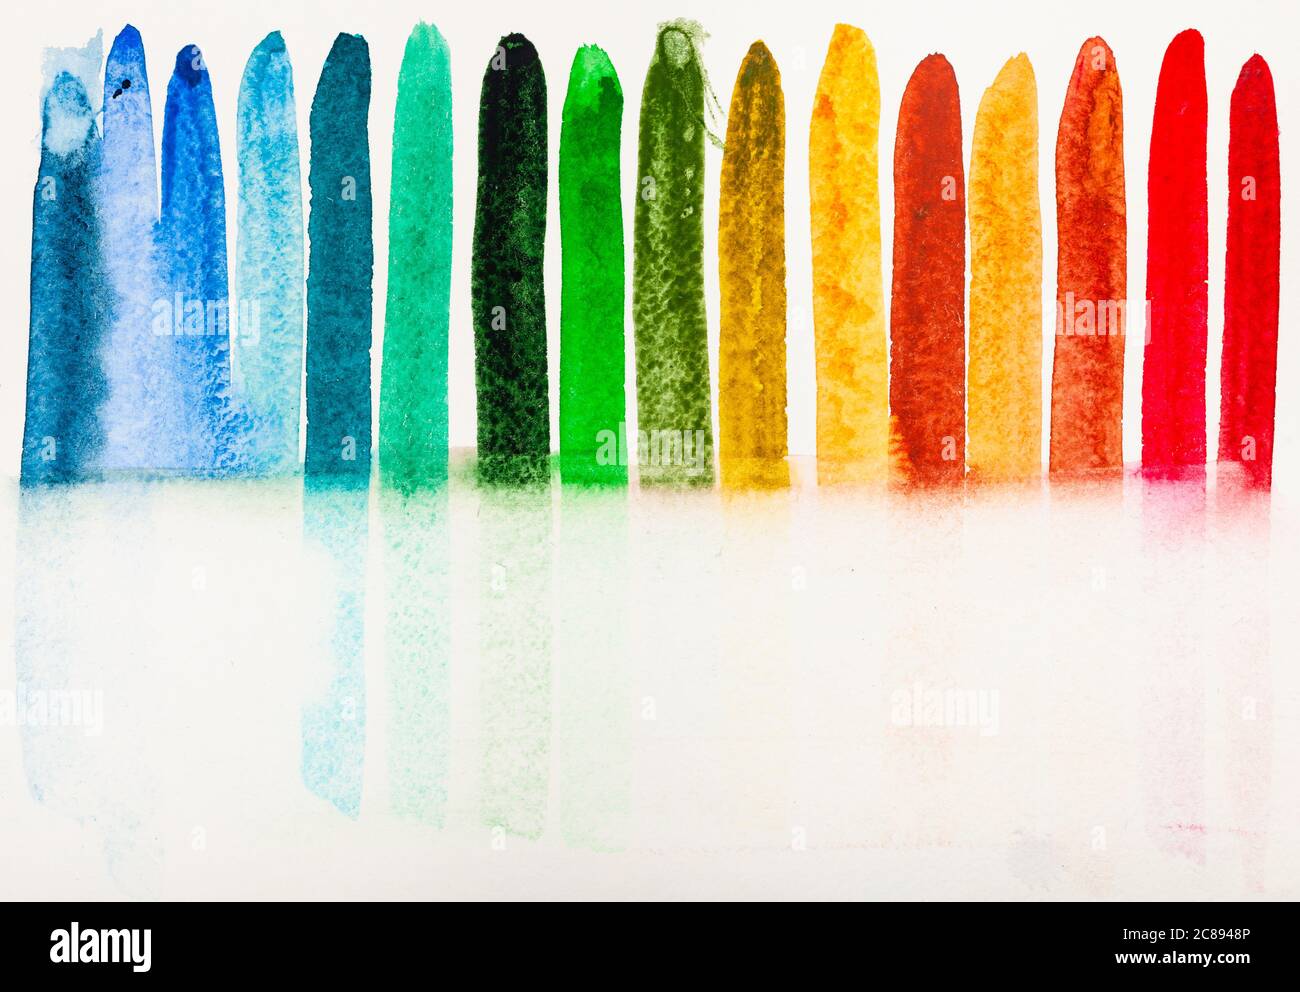 Trainingszeichnung auf Überprüfung der Feuchtigkeitsaufnahme verschiedener Farben durch Papier von Hand mit Aquarellfarben auf weißem Strukturpapier gemalt Stockfoto